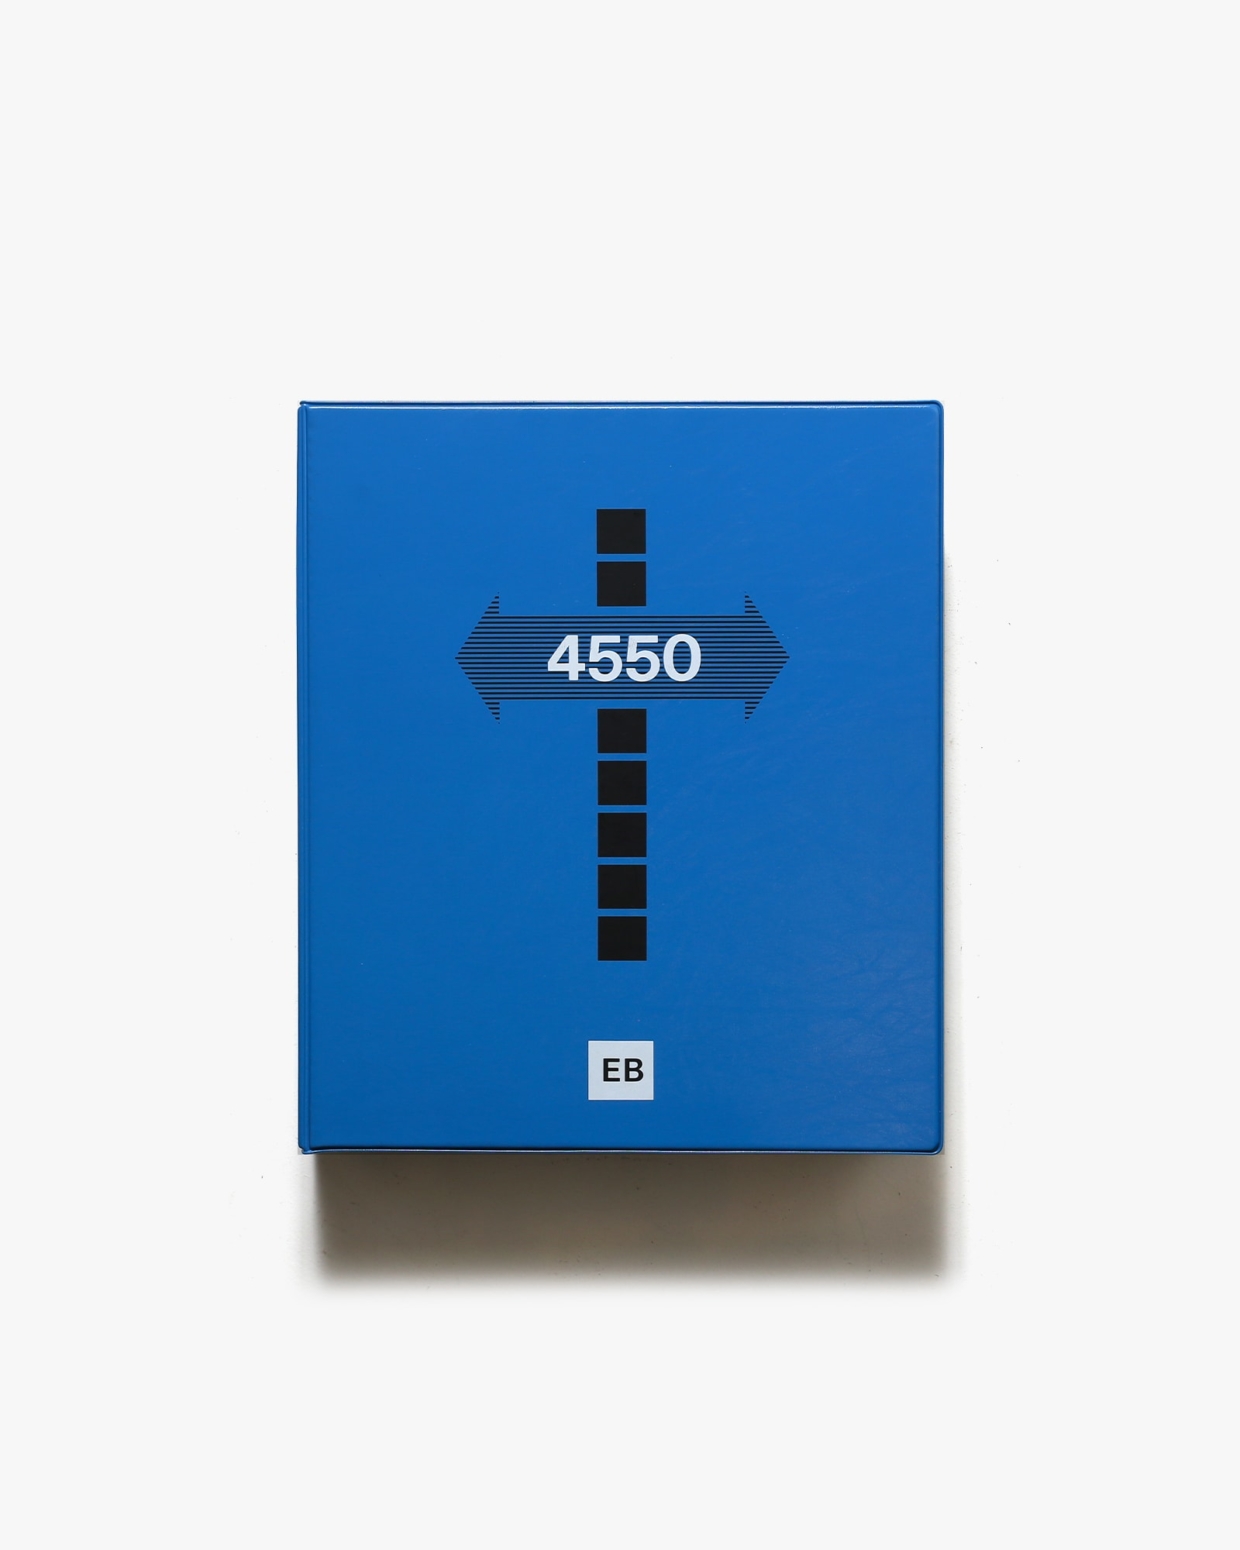 4550ゴシックEB エクストラボールド ディスプレイタイプ | 美術出版社